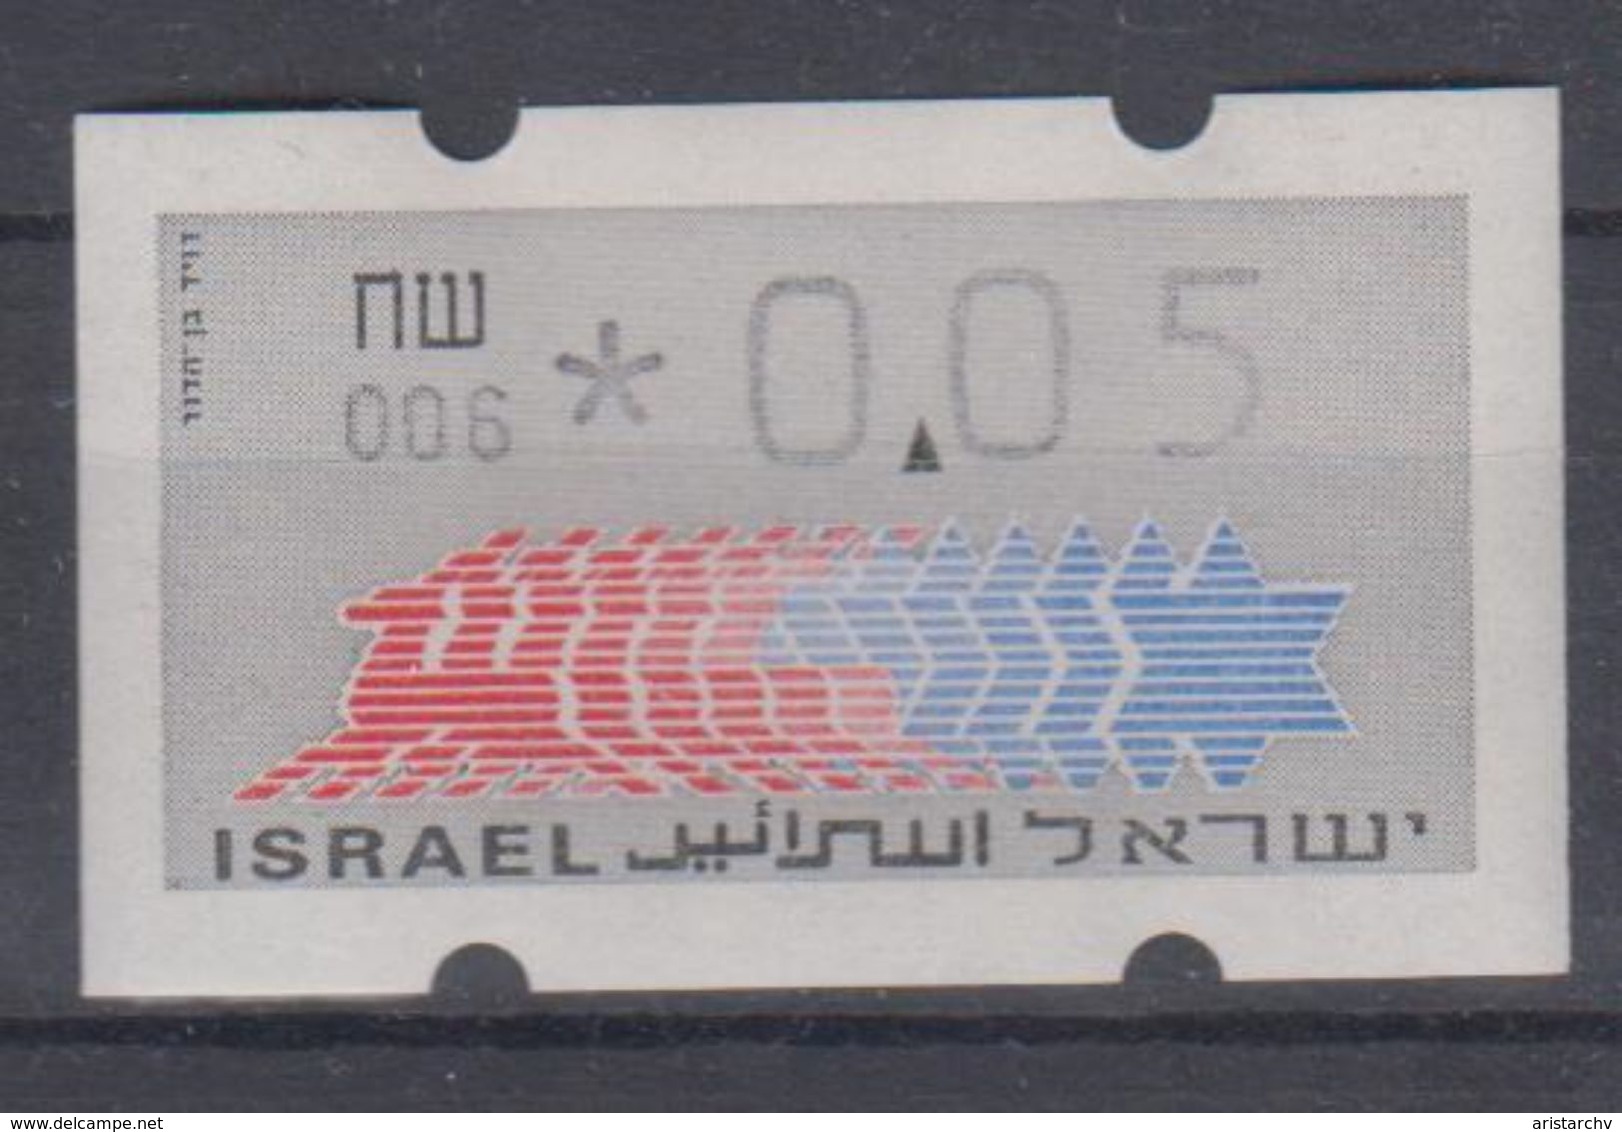 ISRAEL 1988 KLUSSENDORF ATM 0.05 SHEKELS 2 DIFFERENT KINDS OF PAPER NUMBER 006 - Vignettes D'affranchissement (Frama)